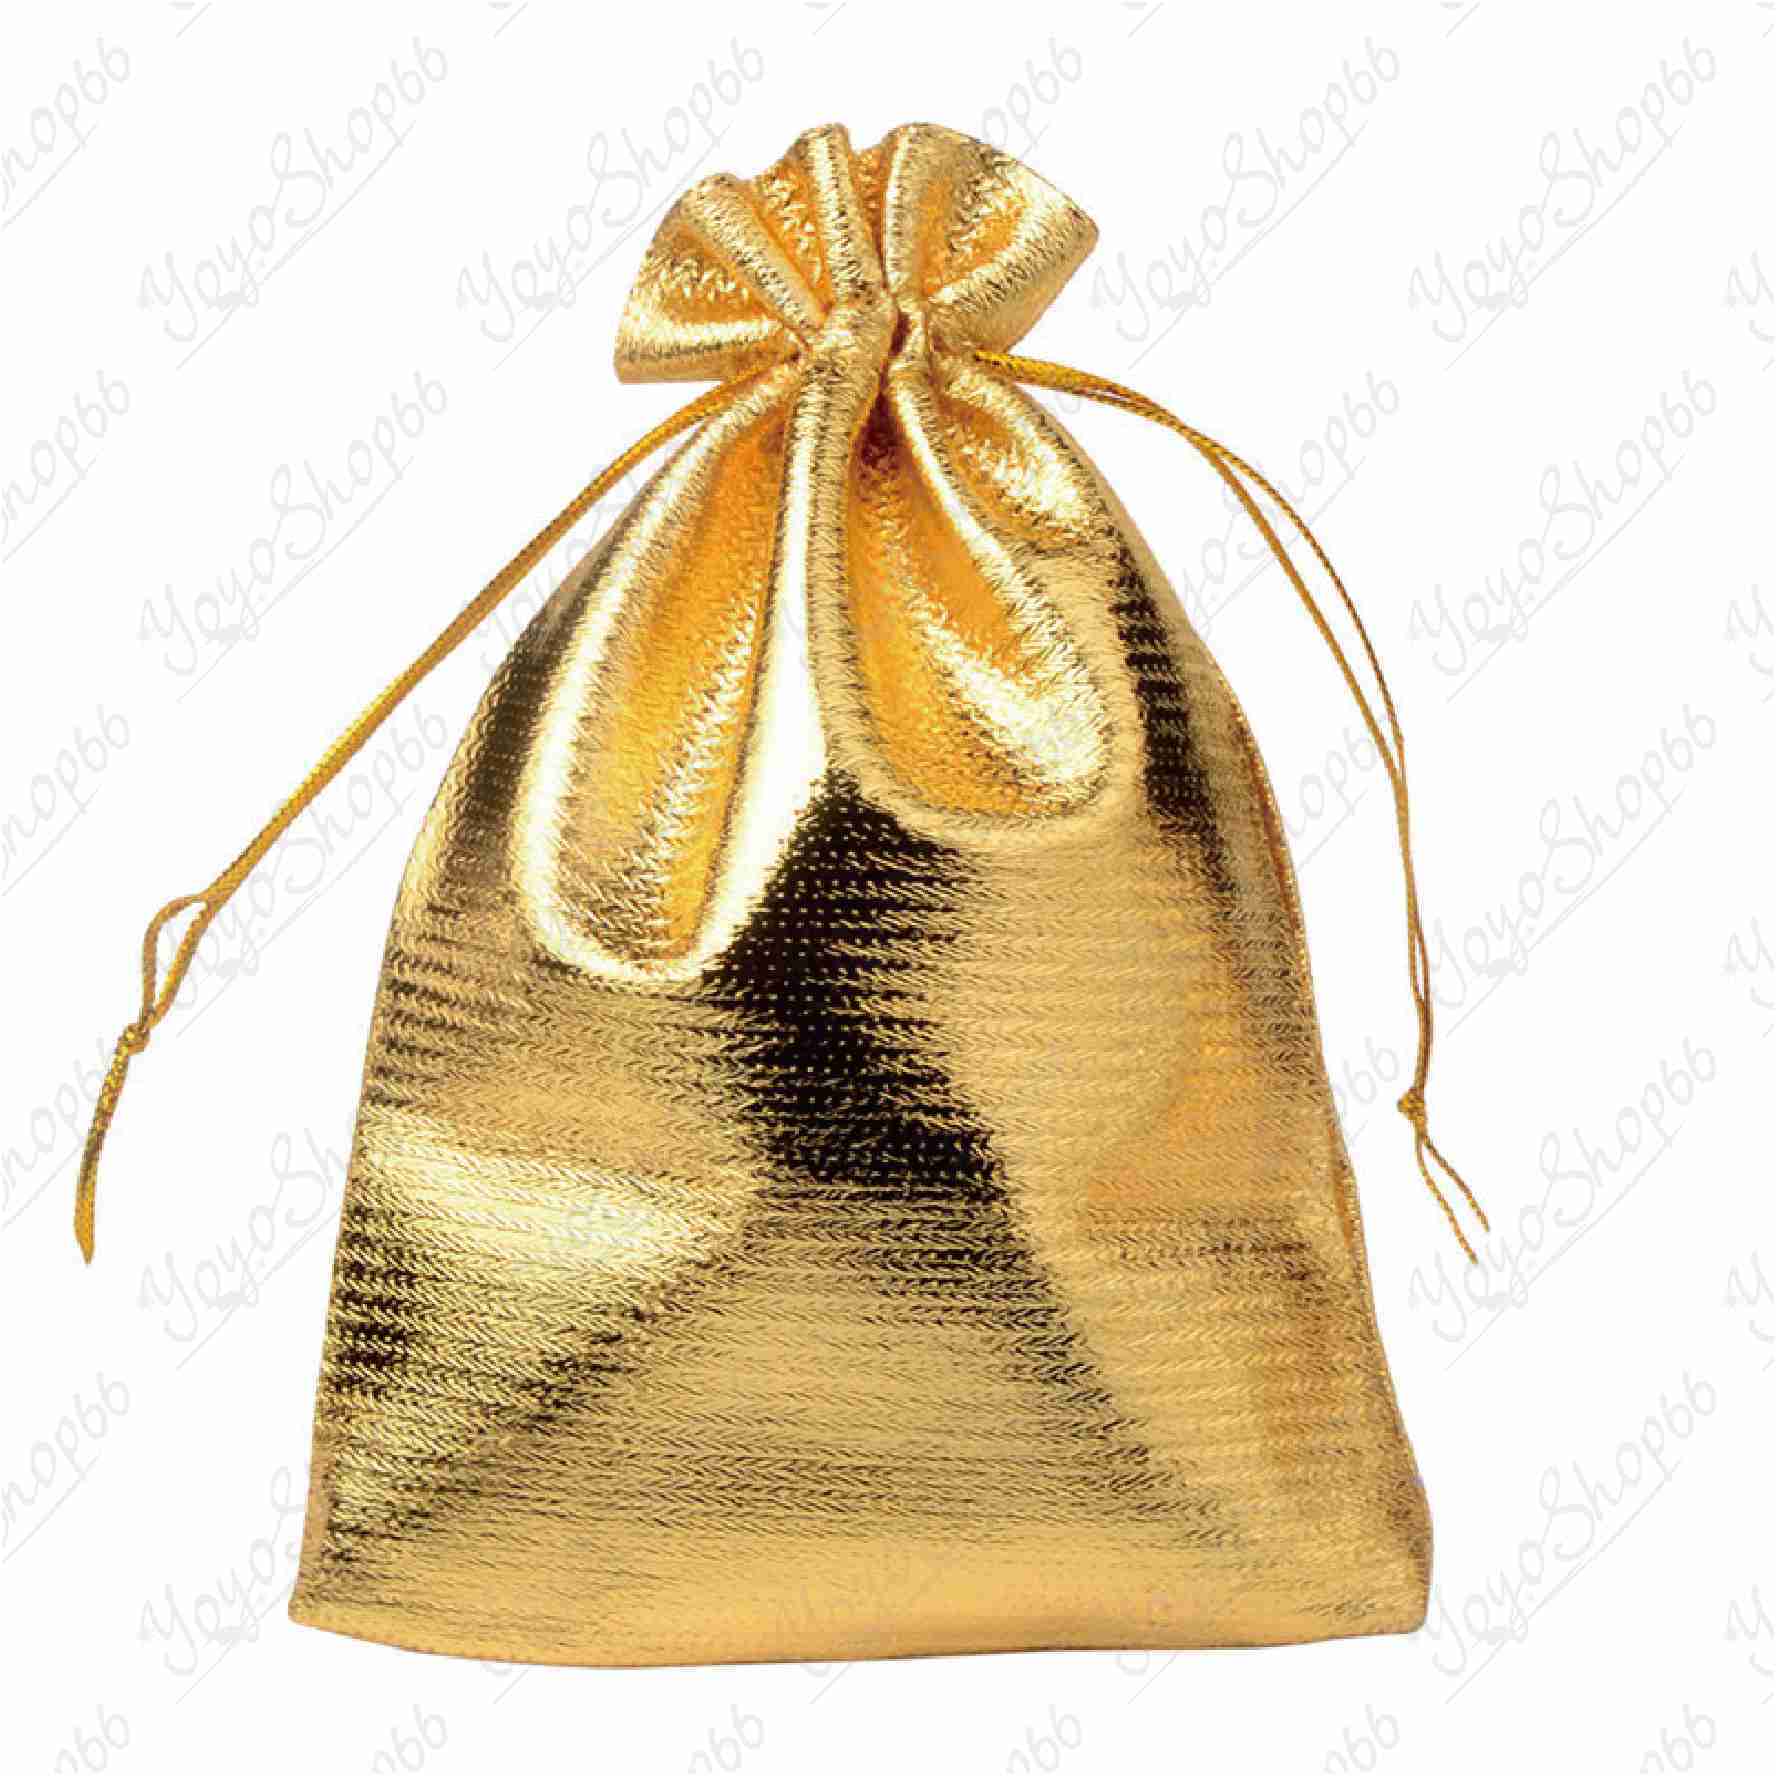 #631【小號 7* 9CM(1入) 】首飾包裝袋(1入) 金銀布袋 束口抽繩袋 高檔首飾袋 金袋 禮品袋【愛尚生活】